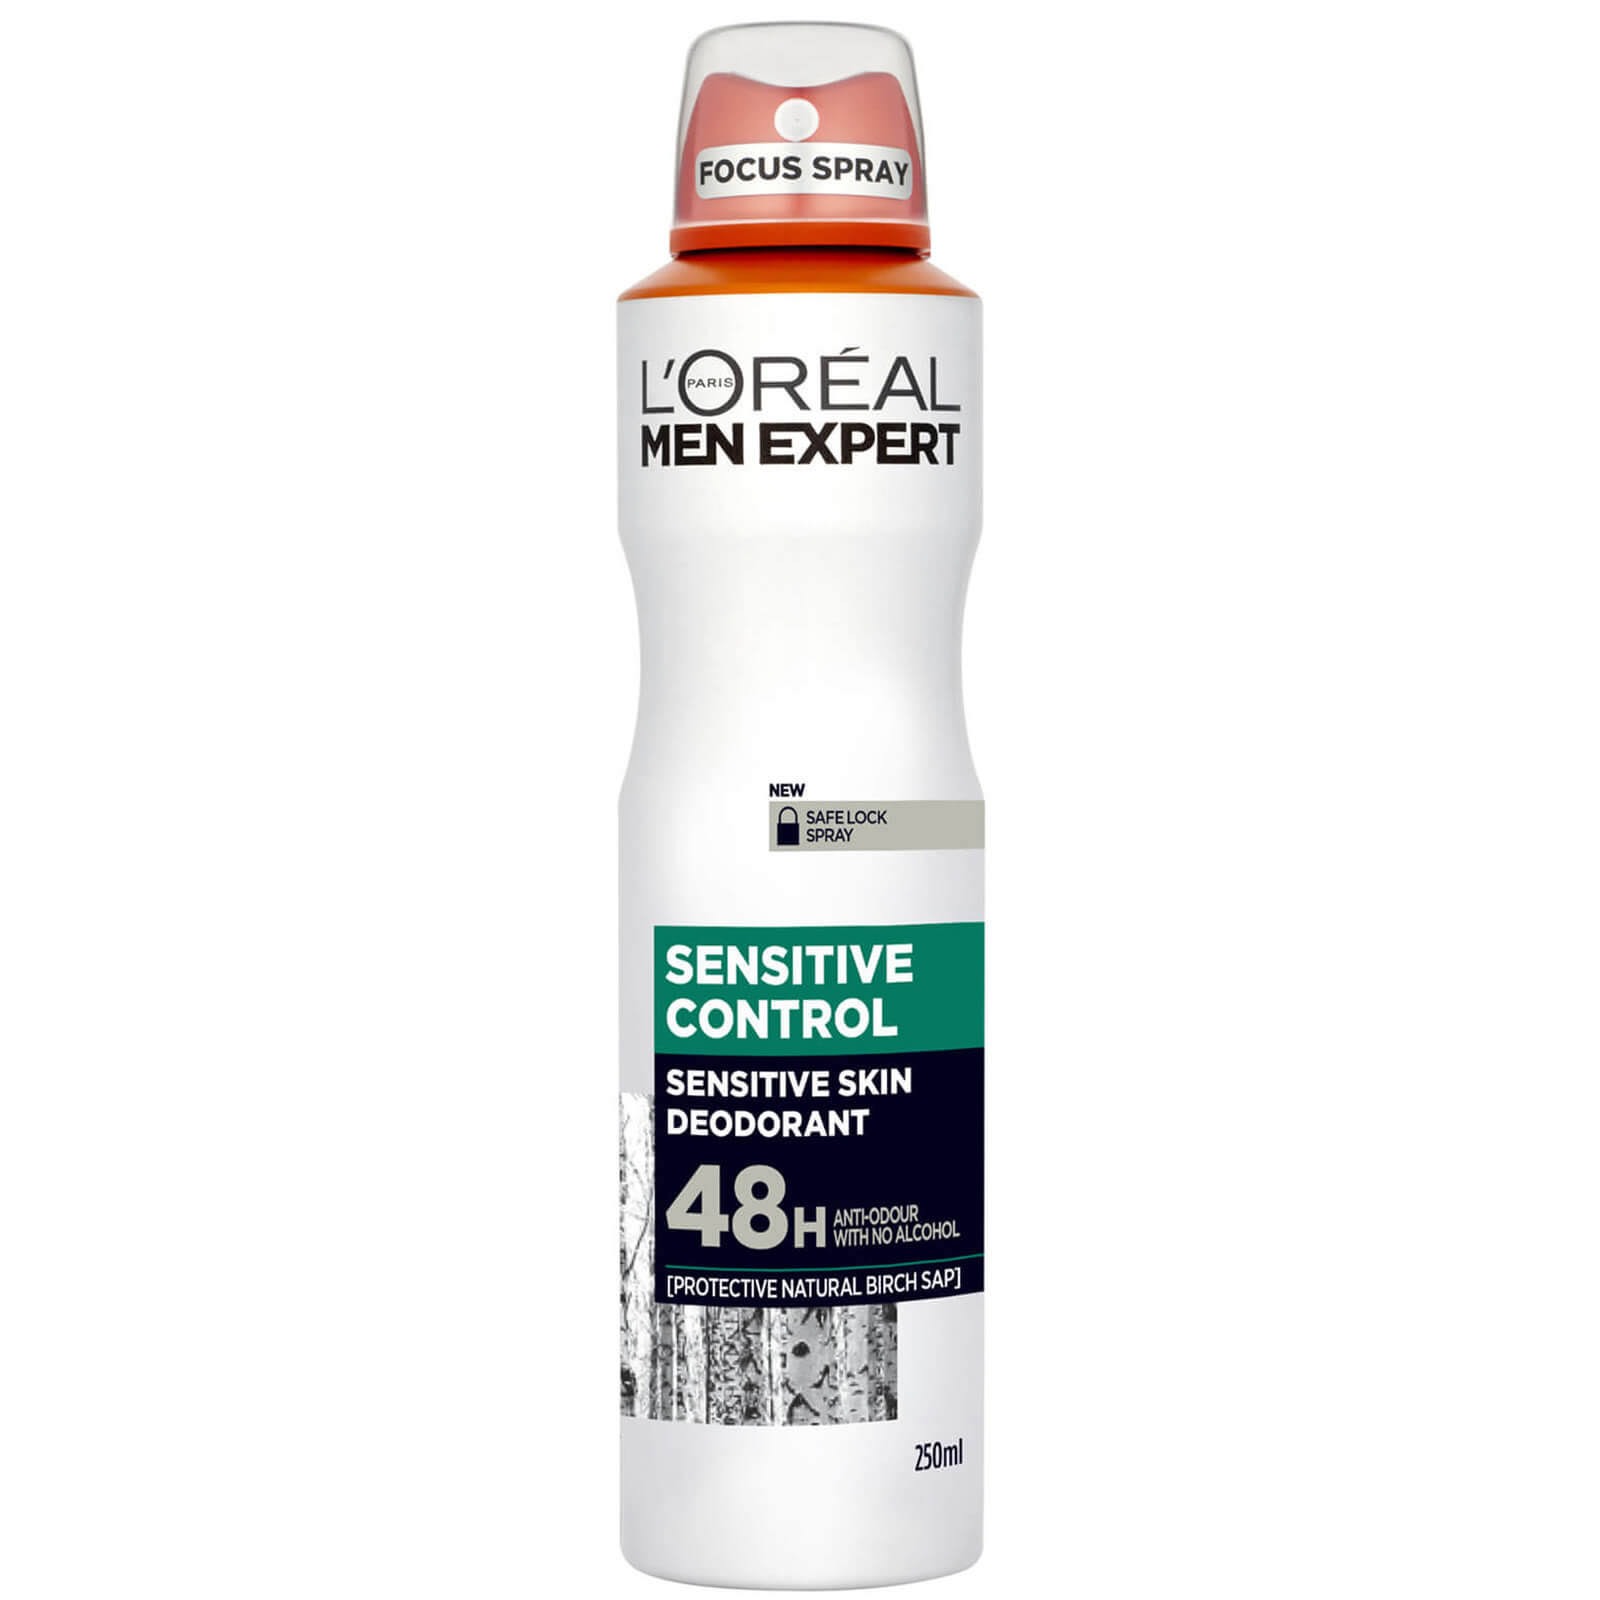 L'Oreal Men Expert Sensitive Control Deodorant - 250ml